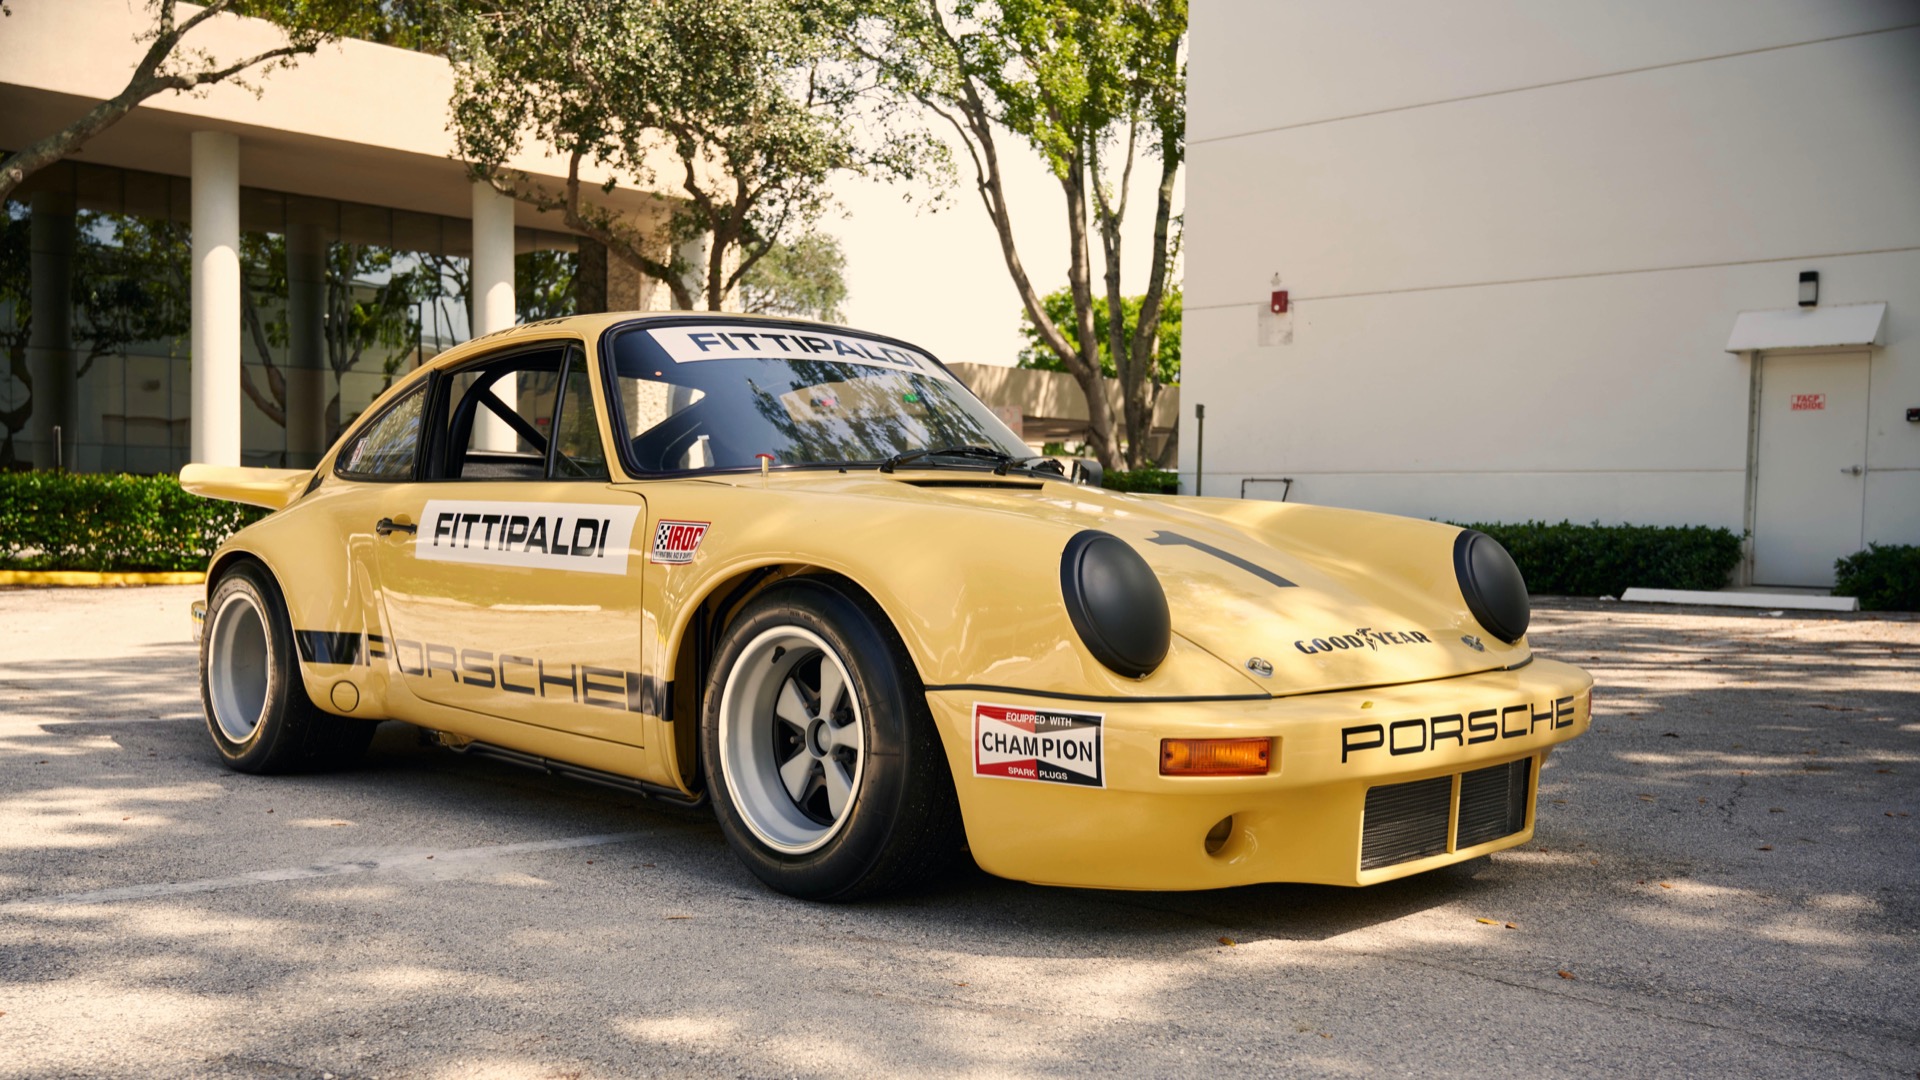 Pablo 1974 Porsche 911 RSR is for sale, again